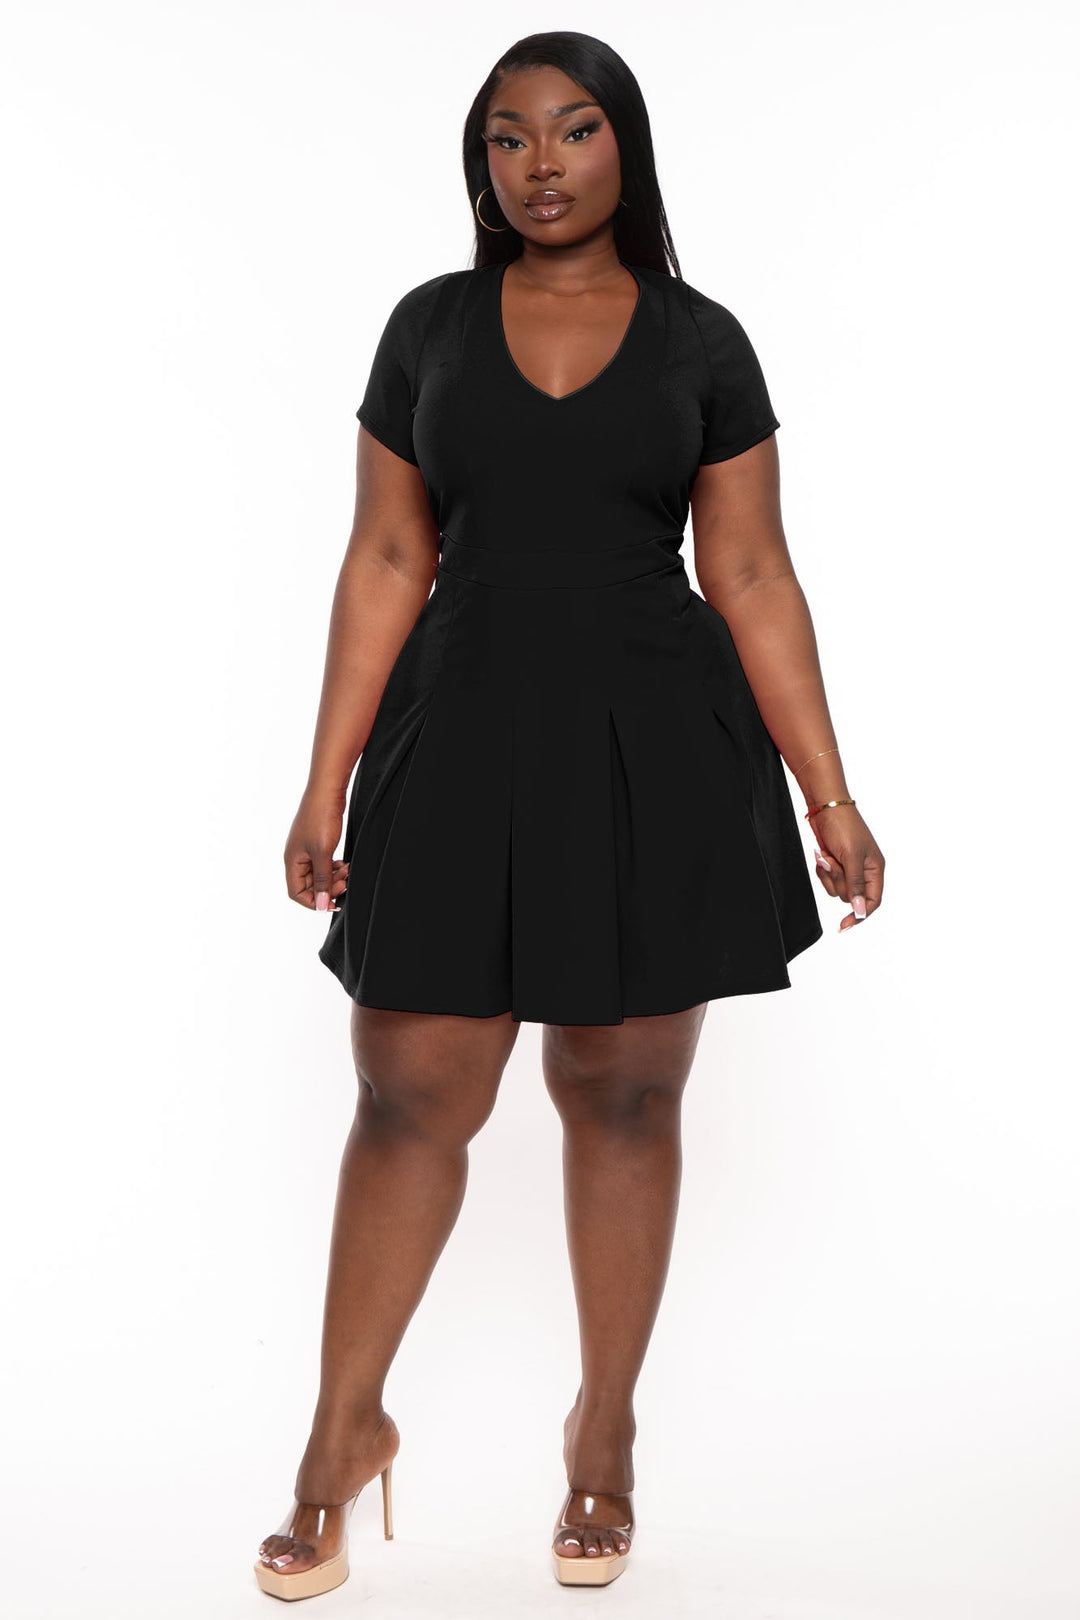 Agnes Orinda Women's Plus Size Velvet Lace Trim Short Sleeve Party A Line  Dresses Black 1X